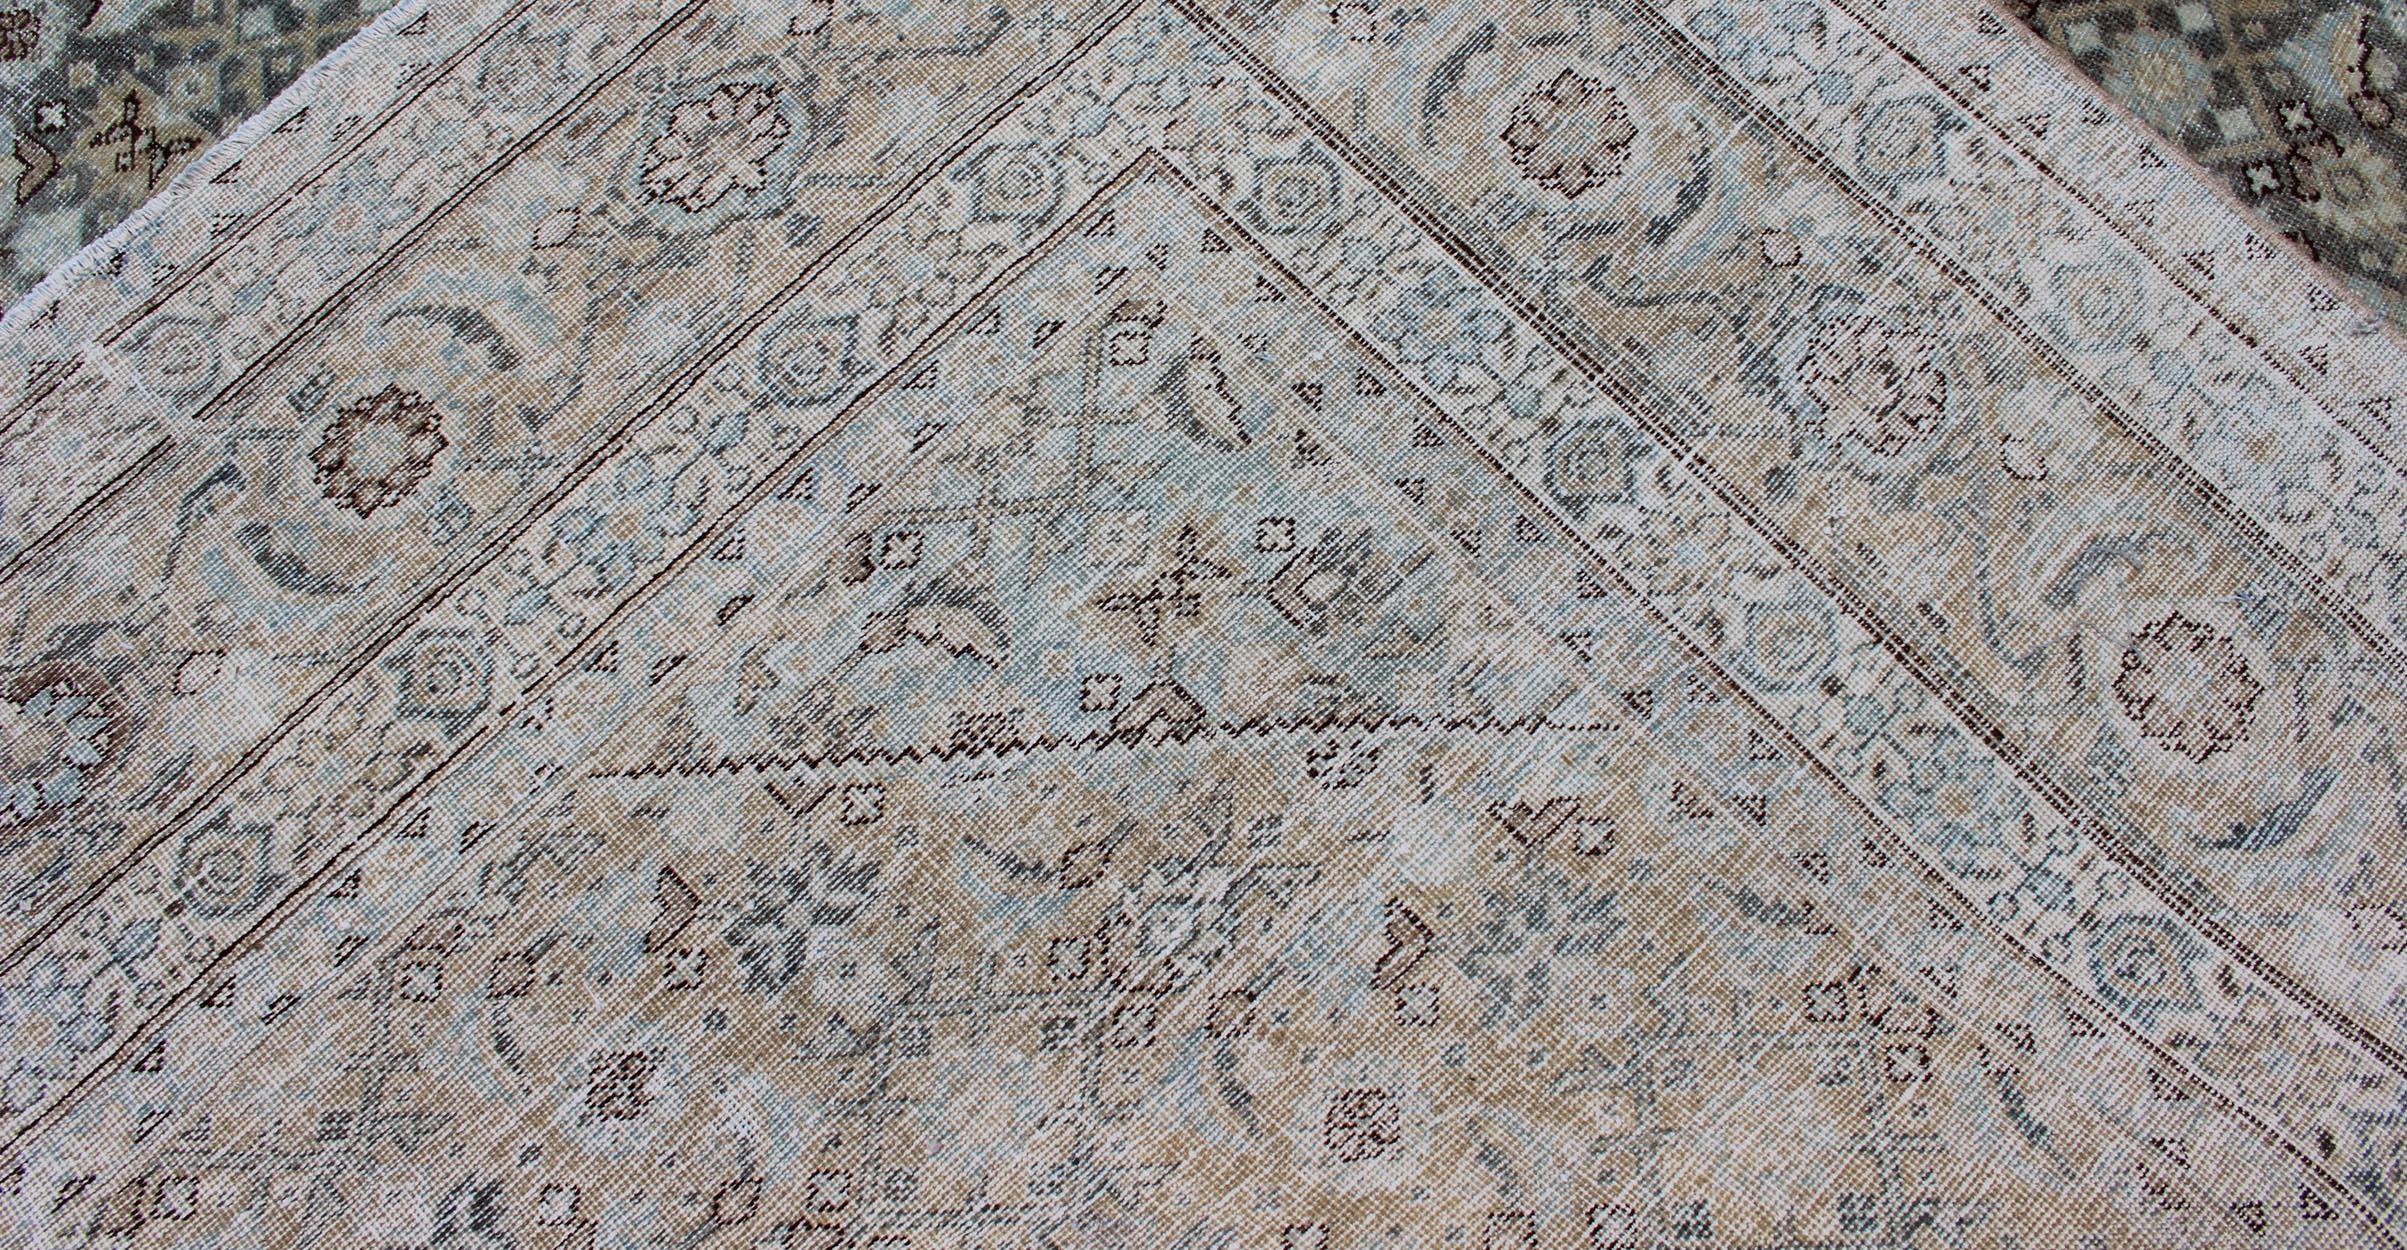 Antique Persian Tabriz Carpet with Geometric Diamond Design in Earth Tones In Good Condition For Sale In Atlanta, GA